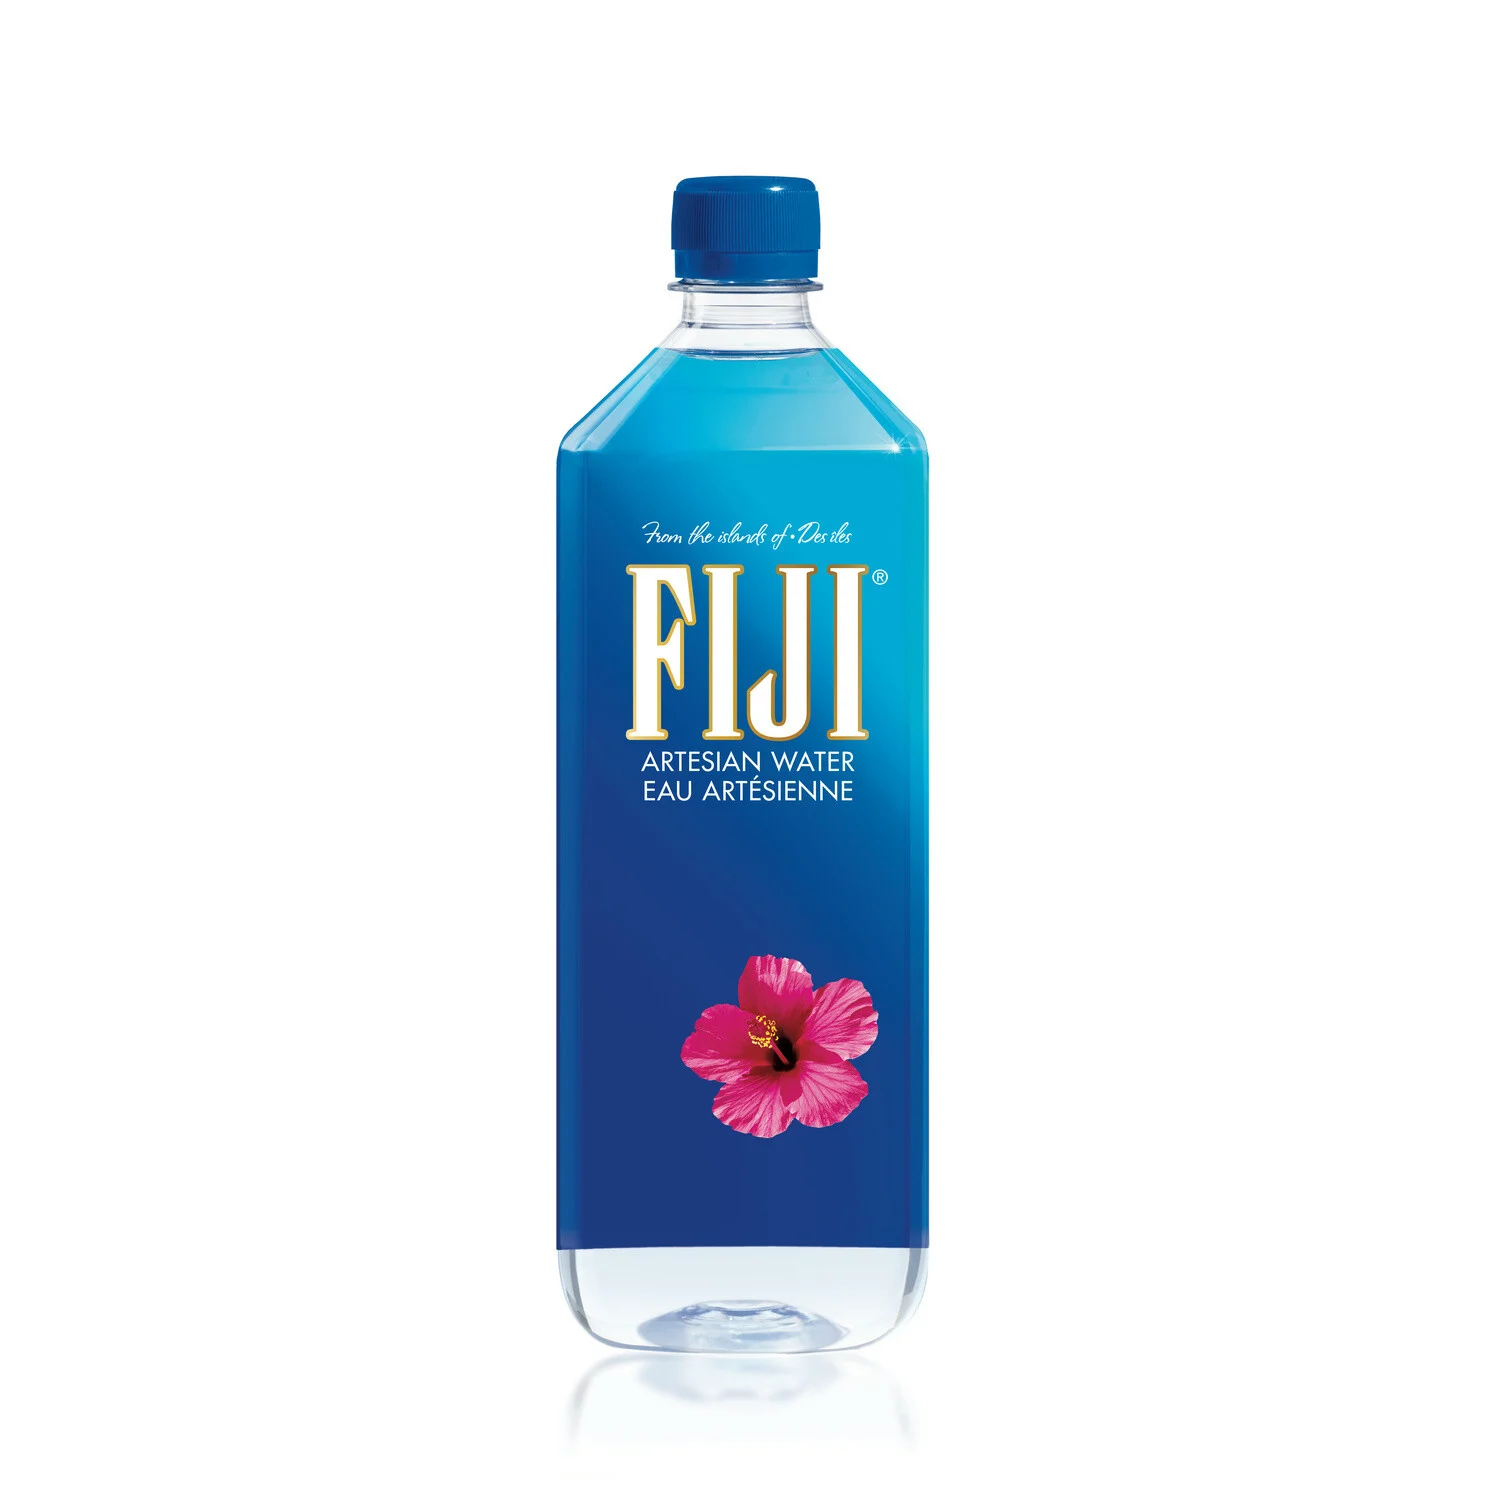 1 升瓶装斐济水